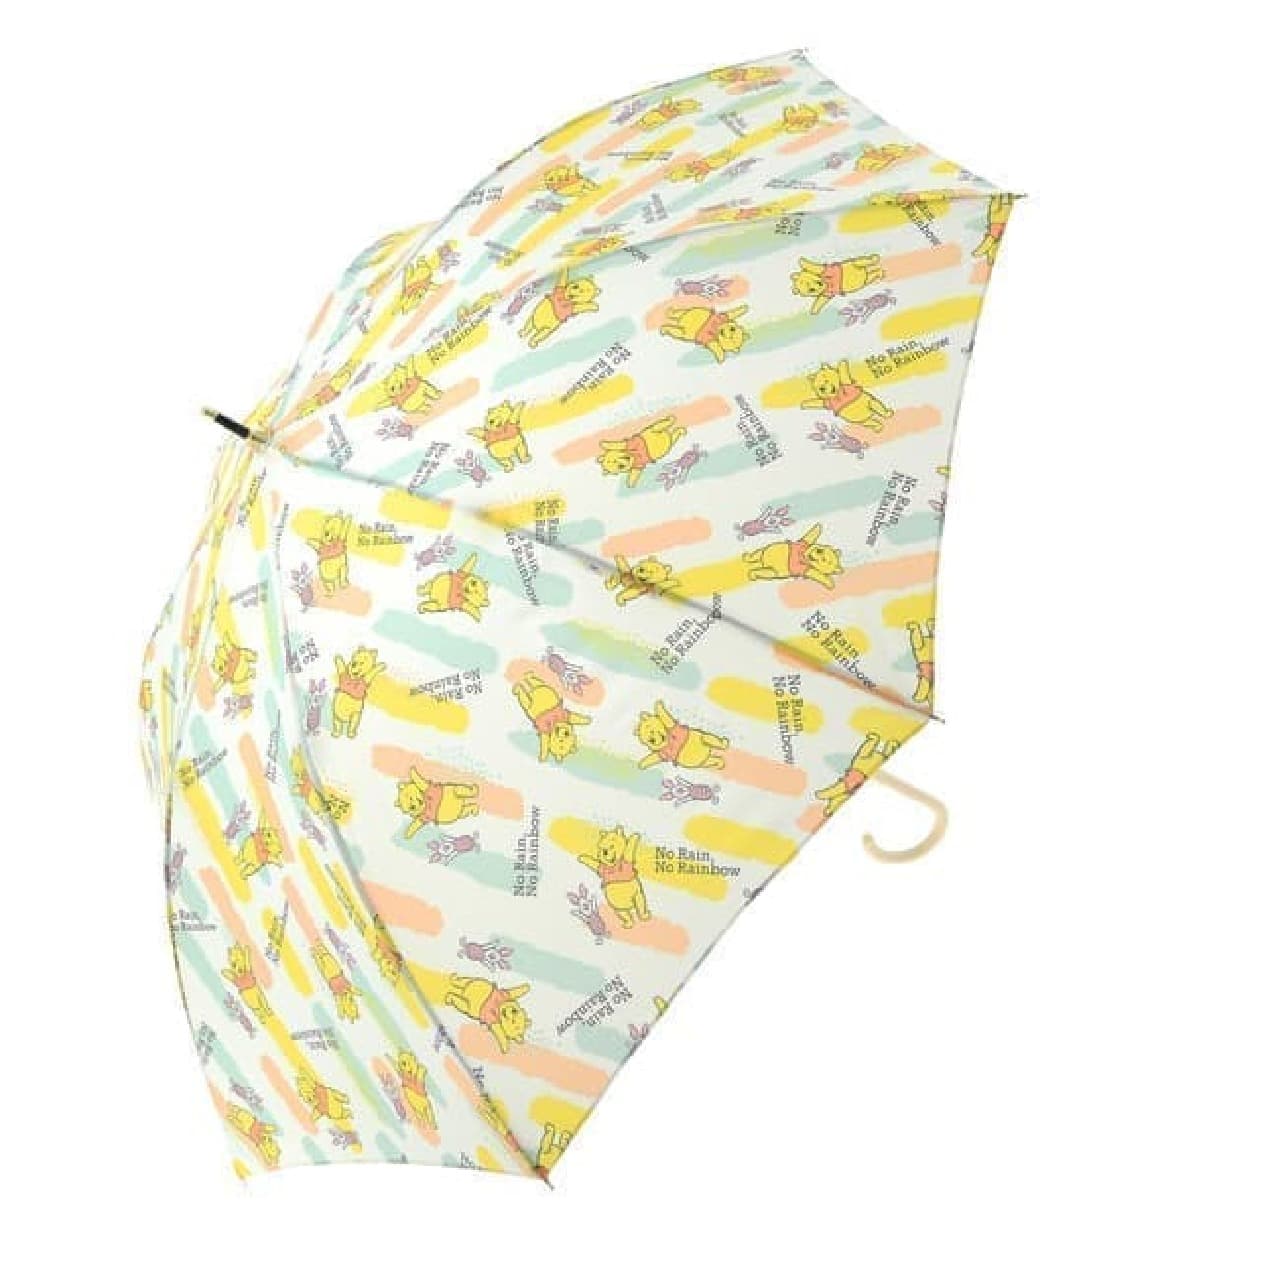 Colorful & pop ♪ Disney Store rain goods --Umbrellas, ponchos, etc.